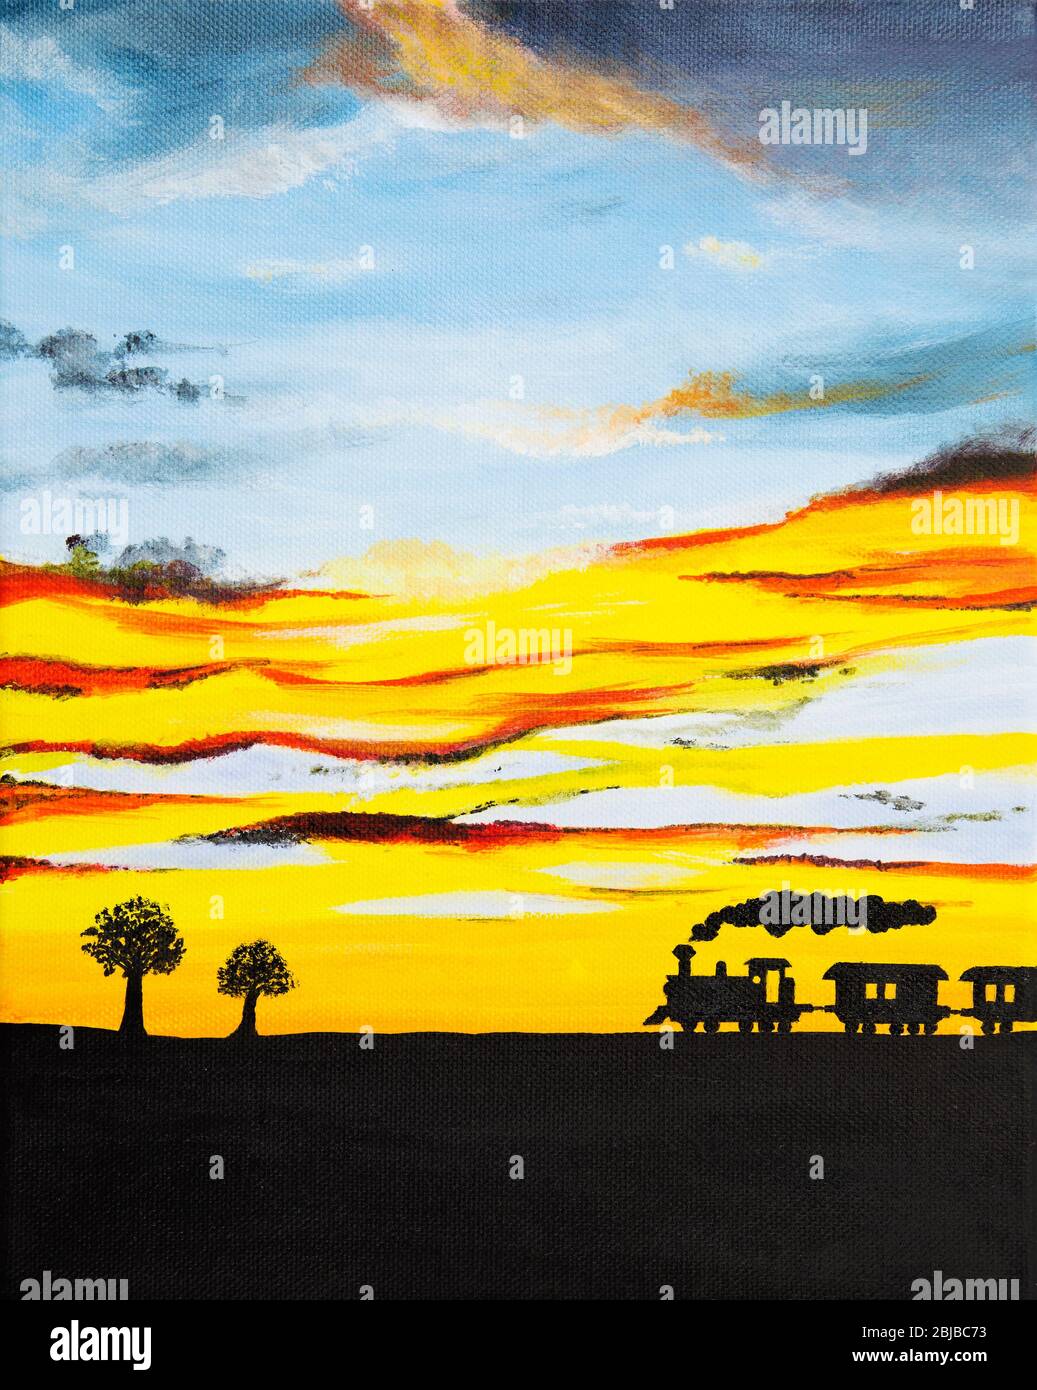 Peinture acrylique originale de la silhouette de train à vapeur et beau coucher de soleil sur toile.l'impressionnisme moderne Banque D'Images